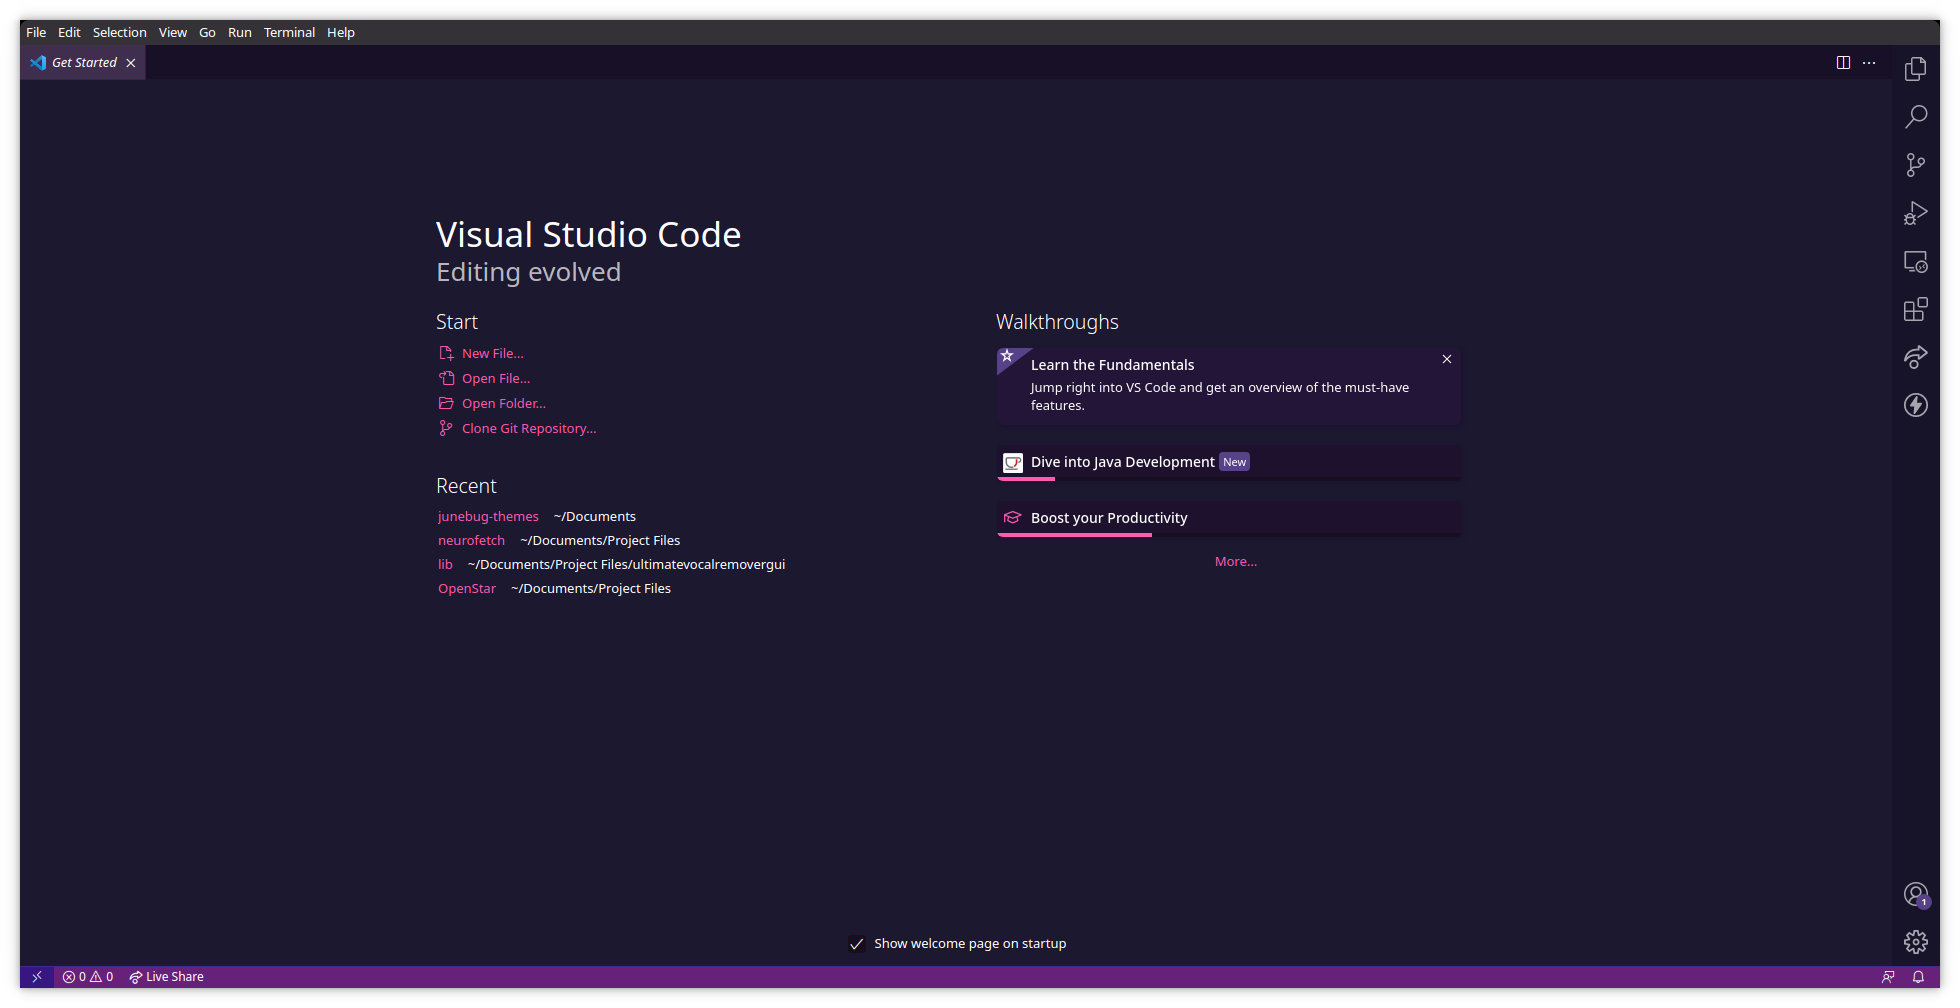 Visual Studio Code - Main Screen